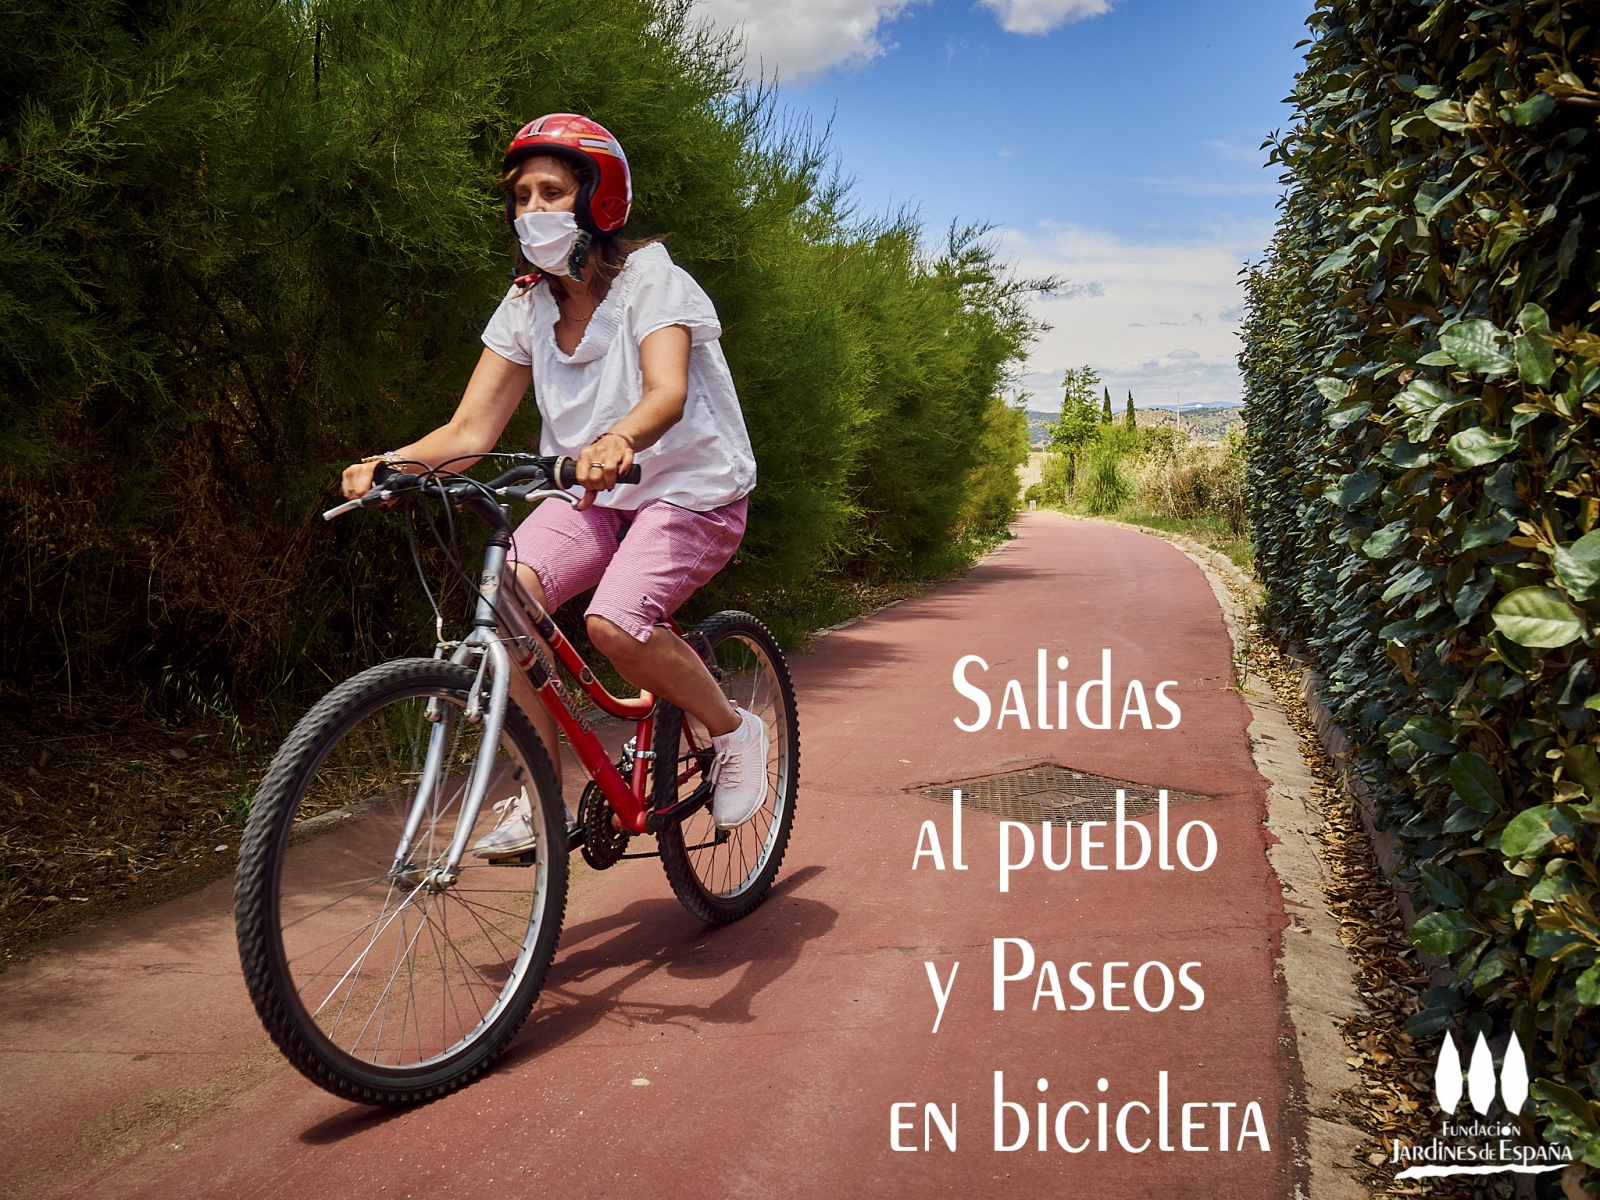 Salidas al pueblo y paseos en bicicleta – Fundación Jardines de España